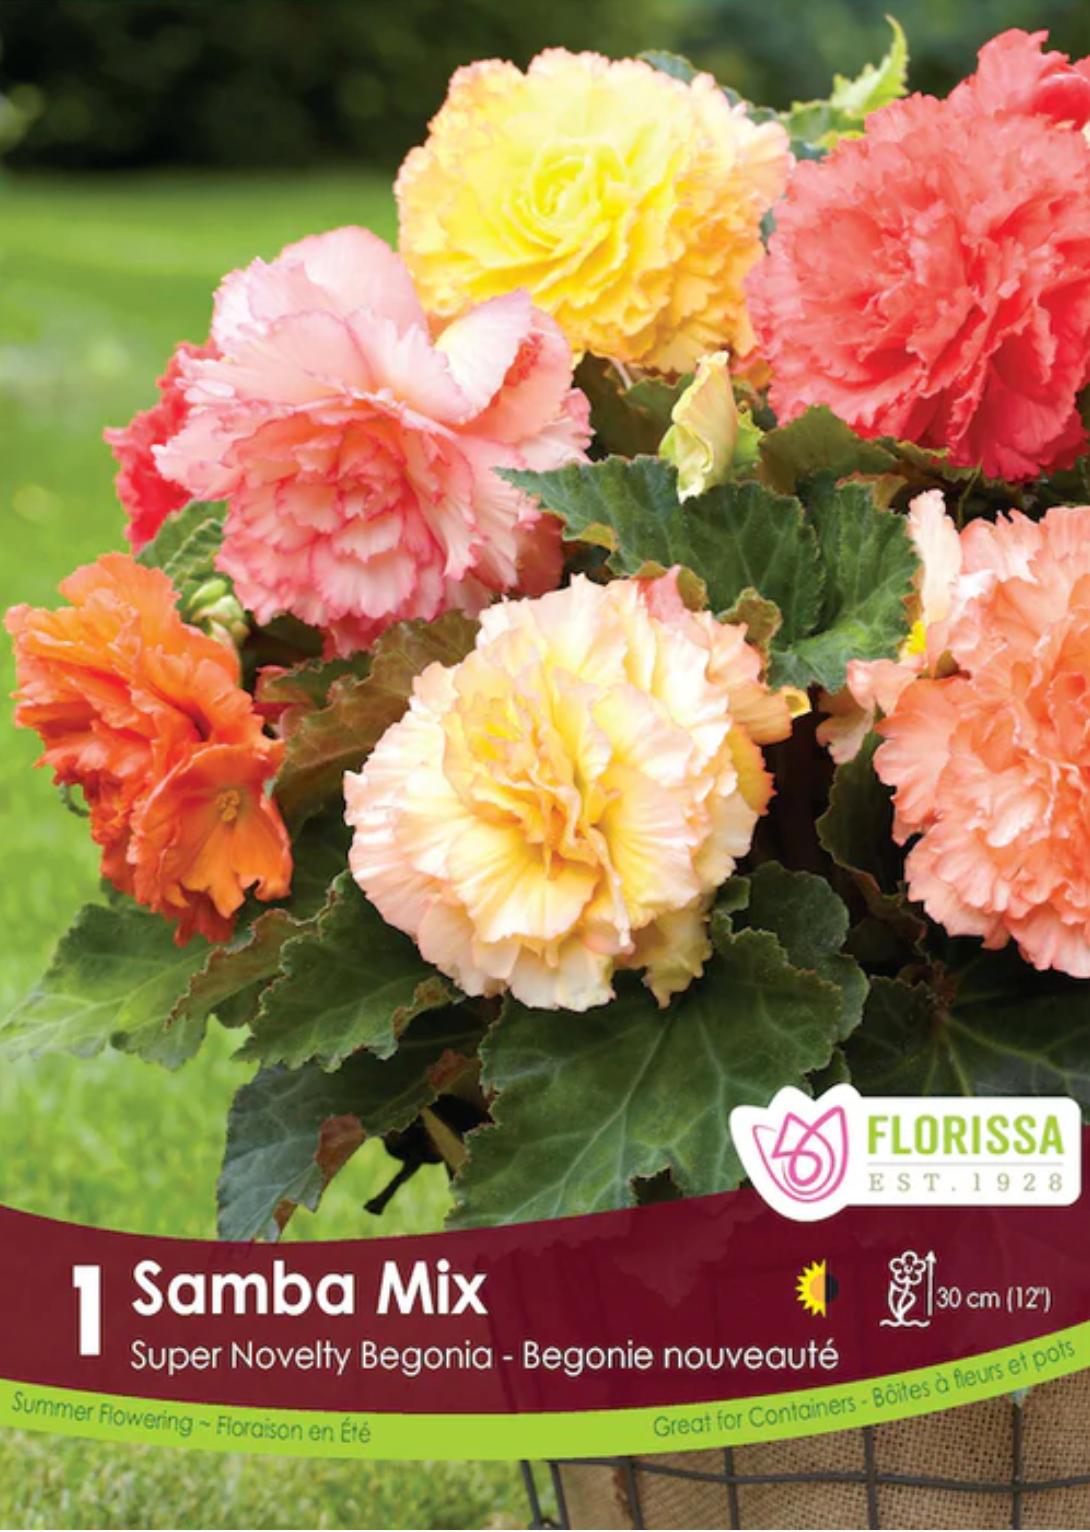 Samba Mix Double Begonia